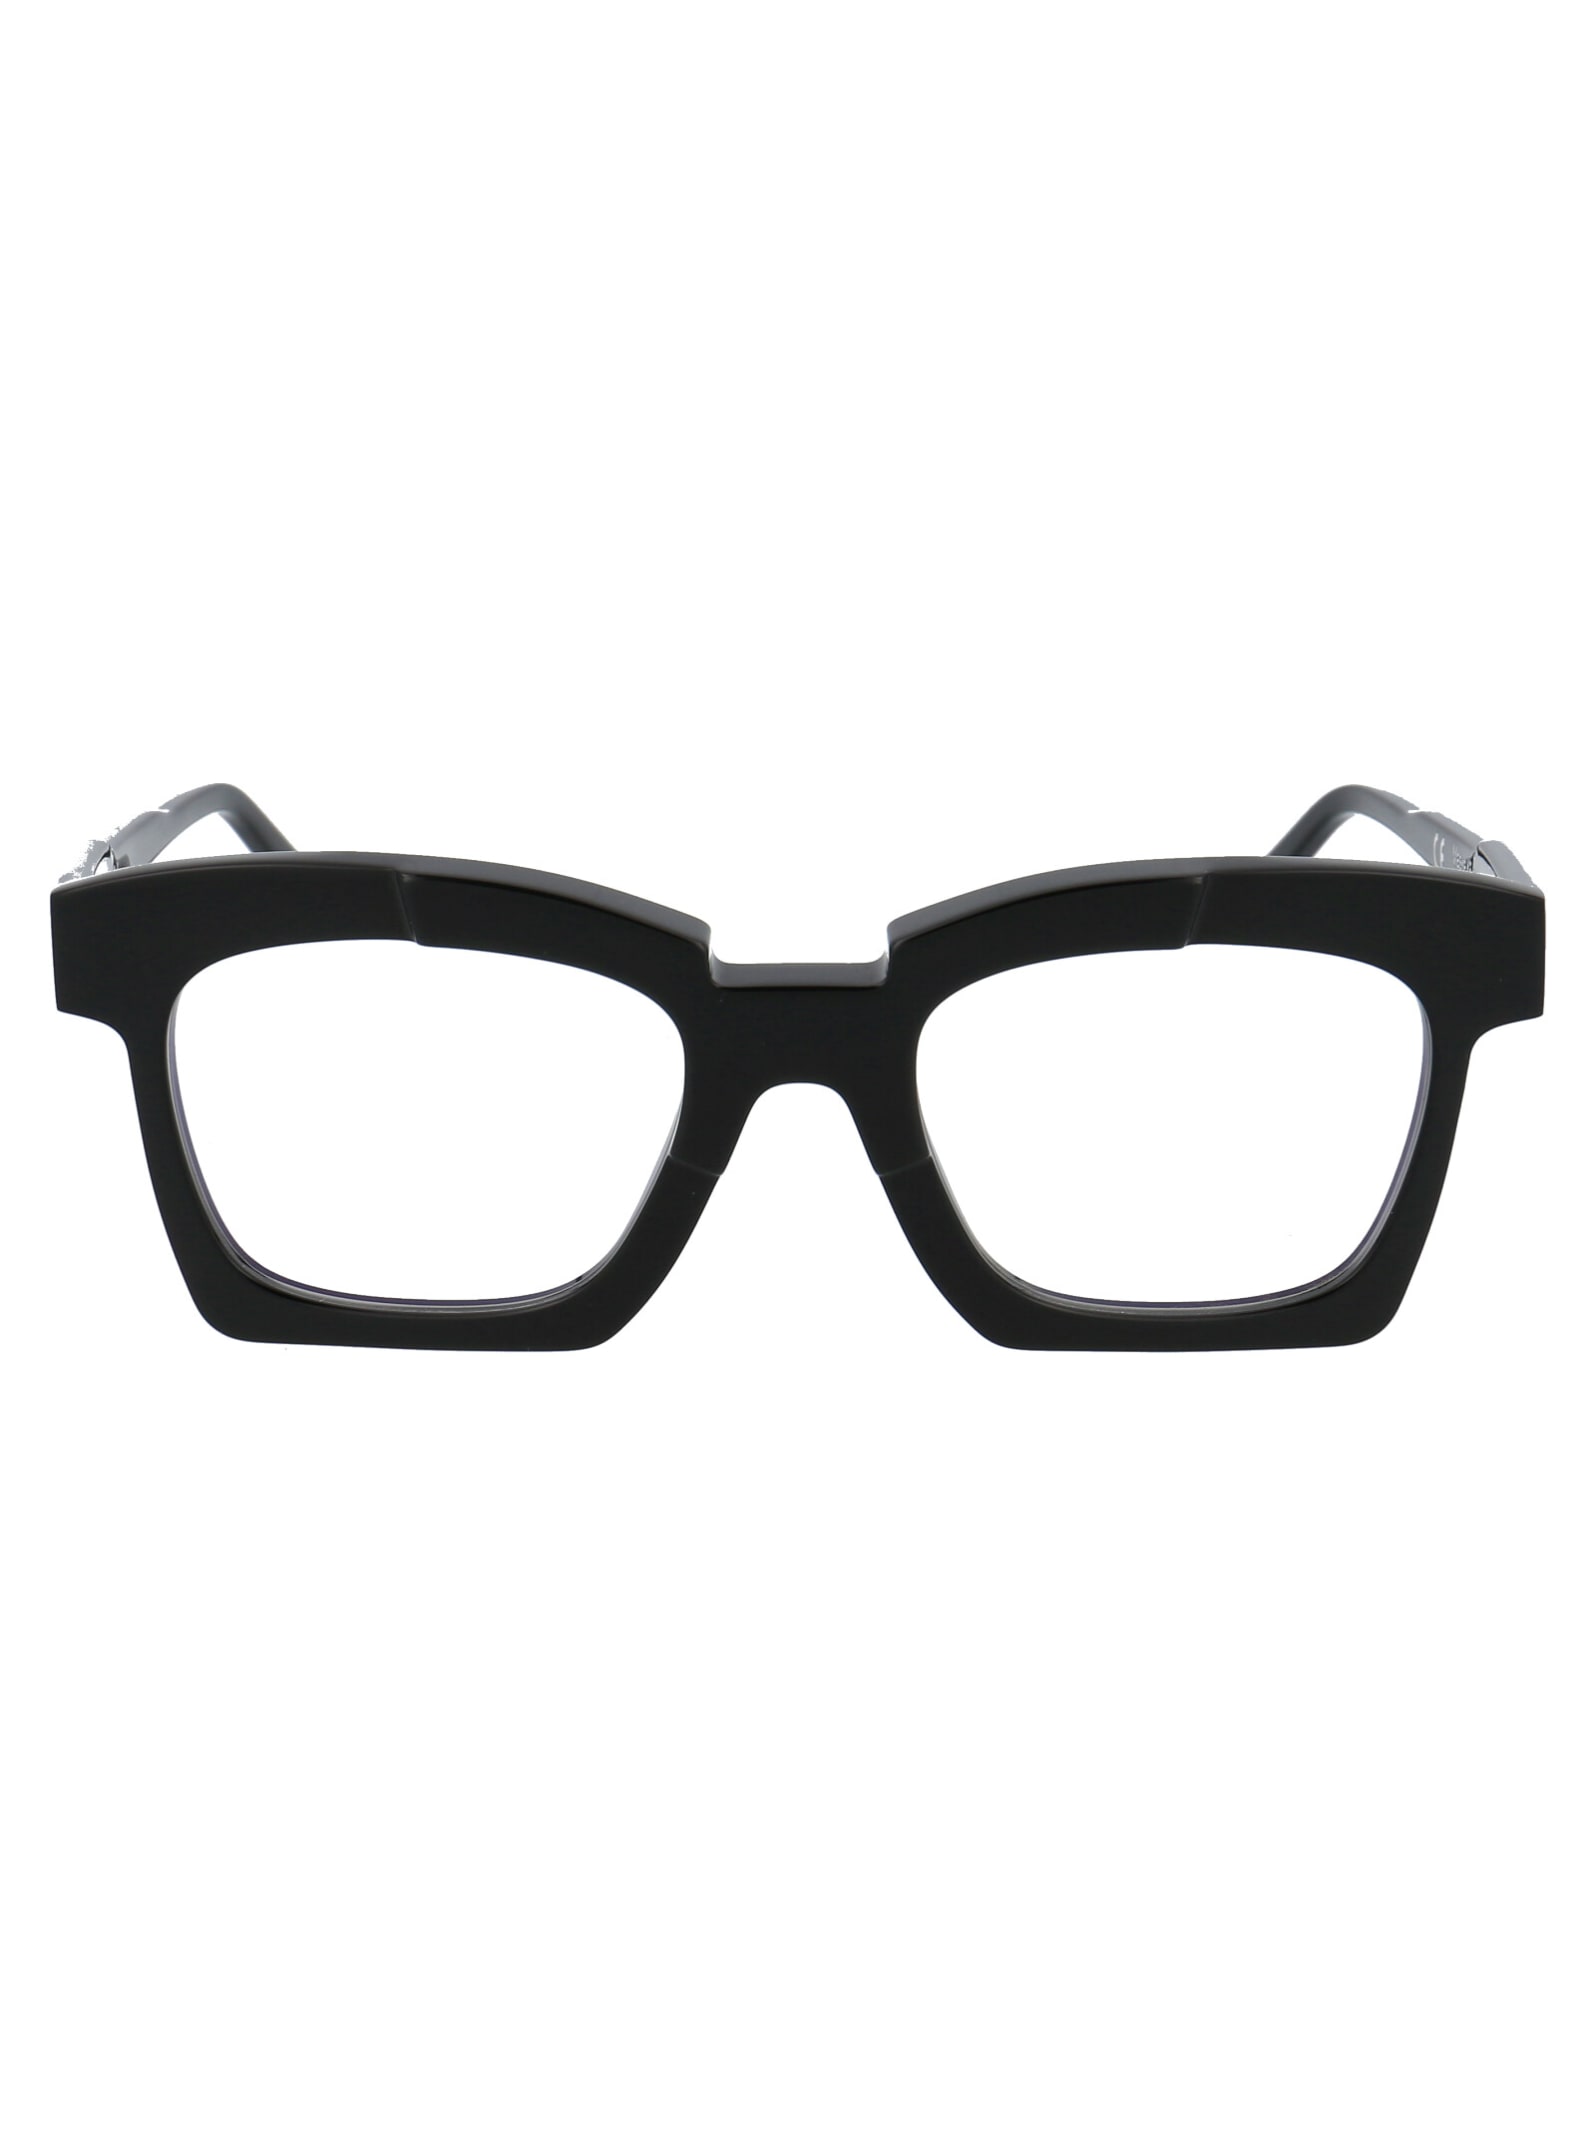 Maske K5 Glasses